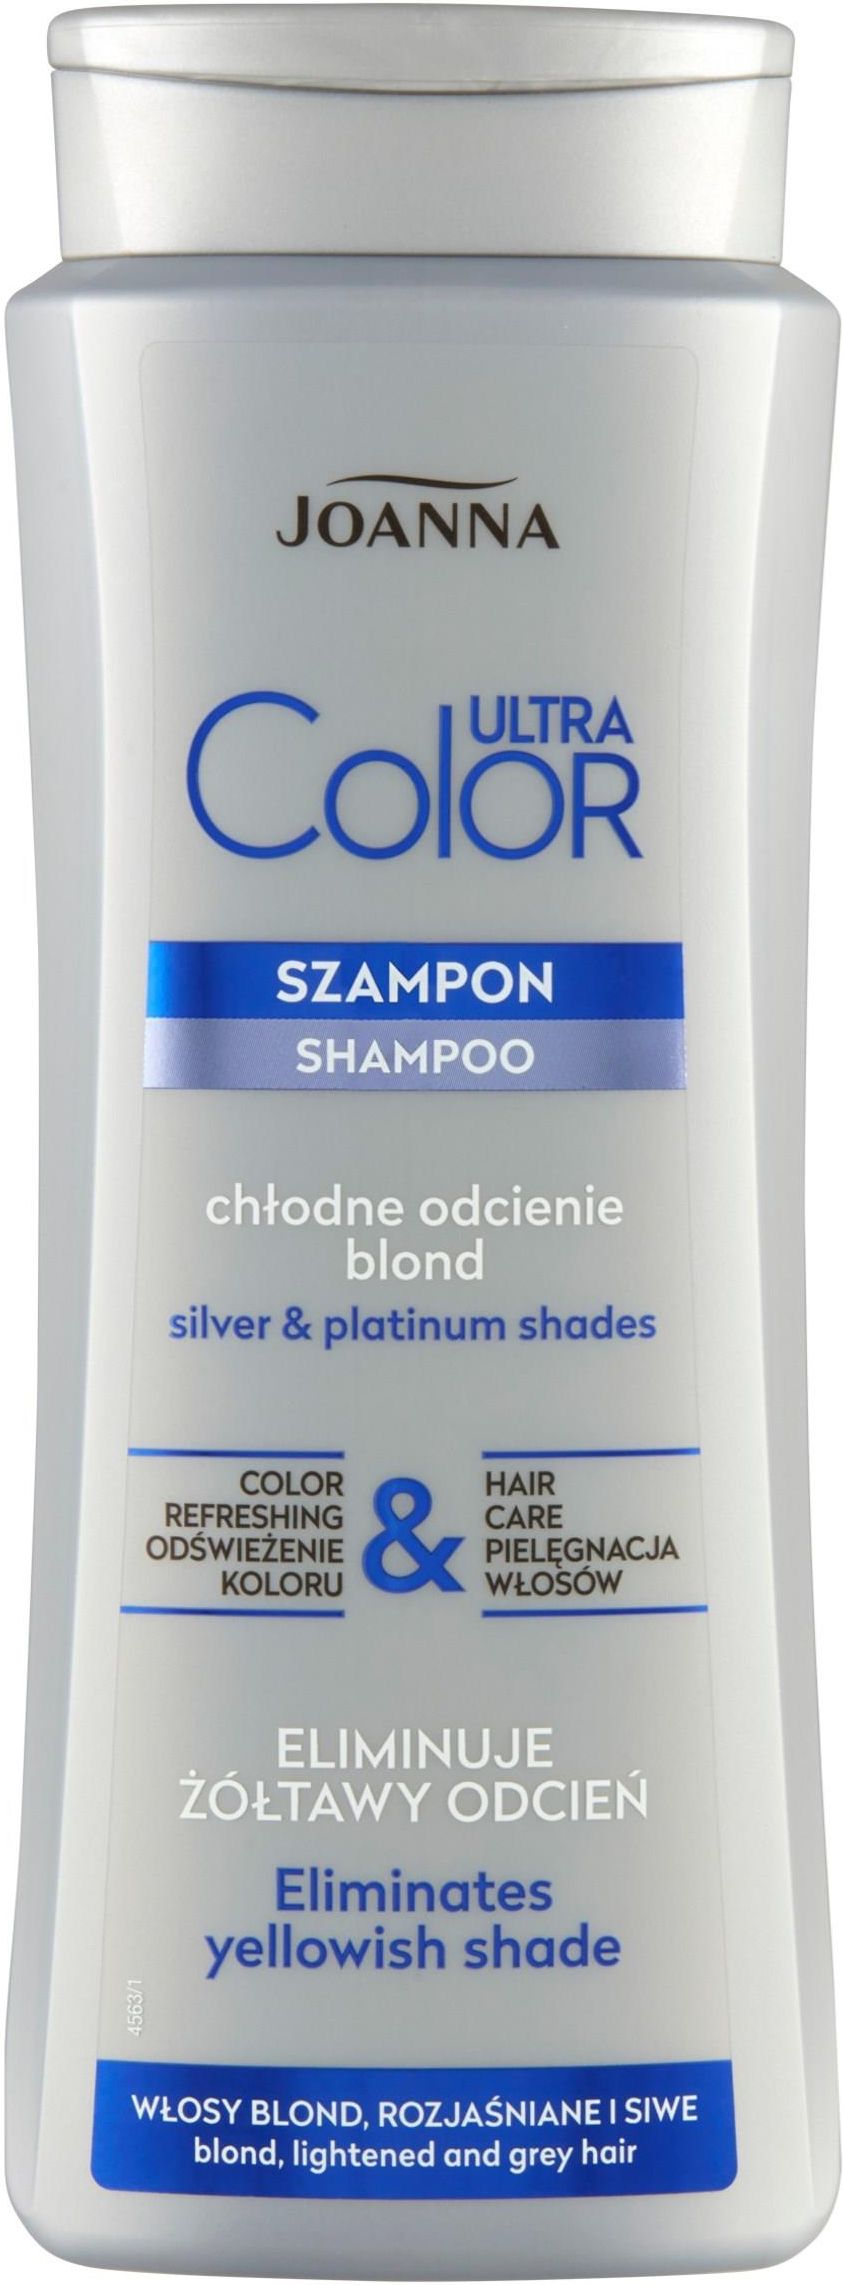 szampon przeciw wypadaniu włosów z joanna opinie